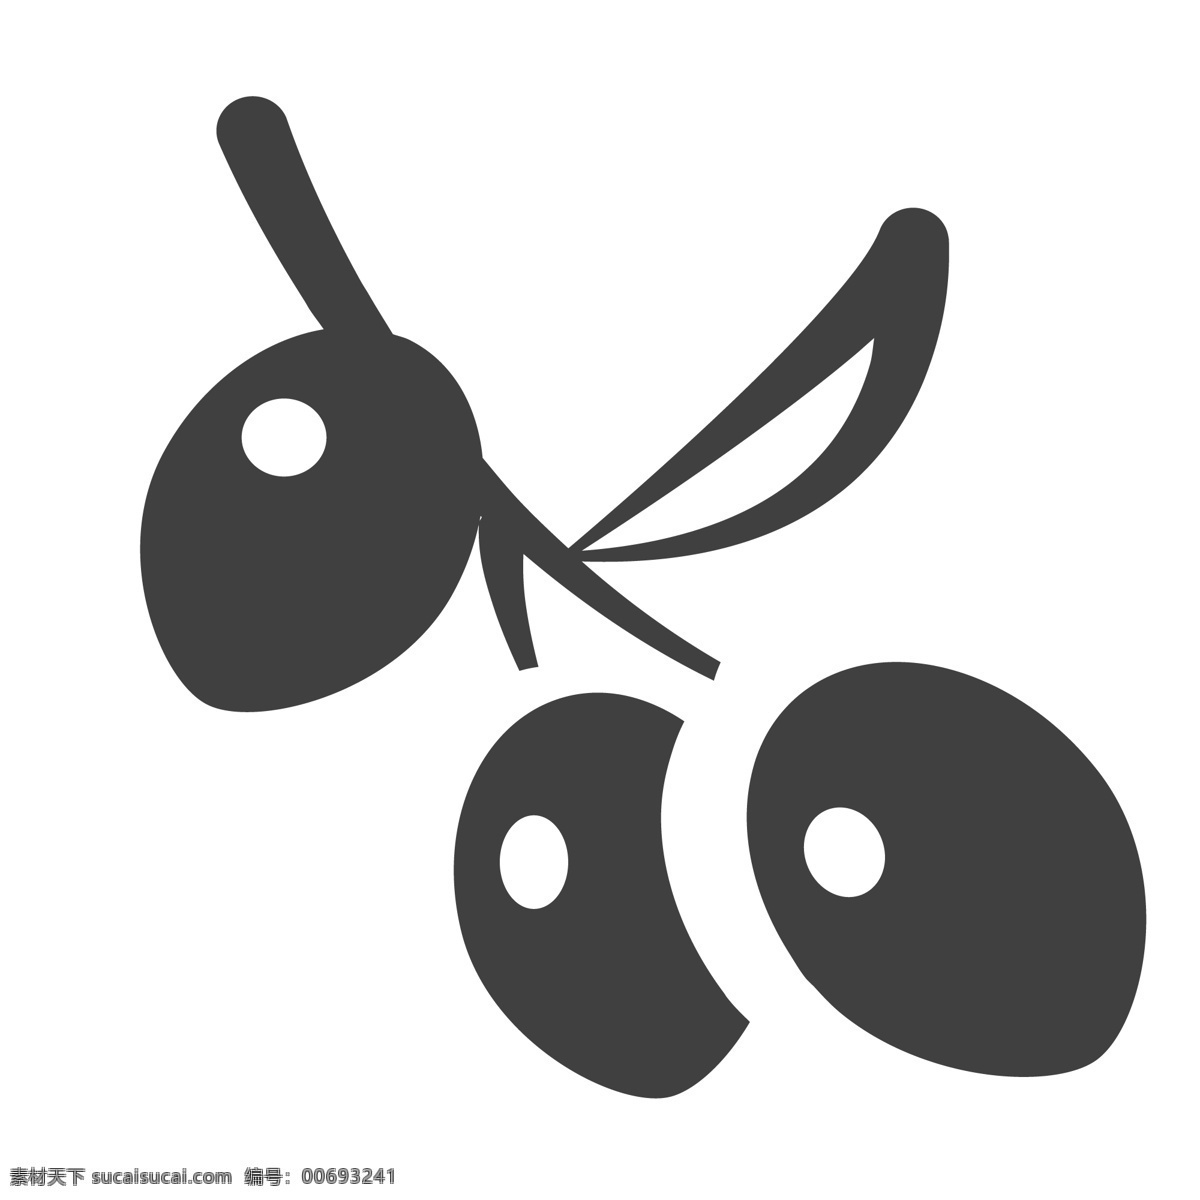 葡萄水果图标 果子 水果 葡萄 生活图标 卡通图标 黑色的图标 手机图标 智能图标设计